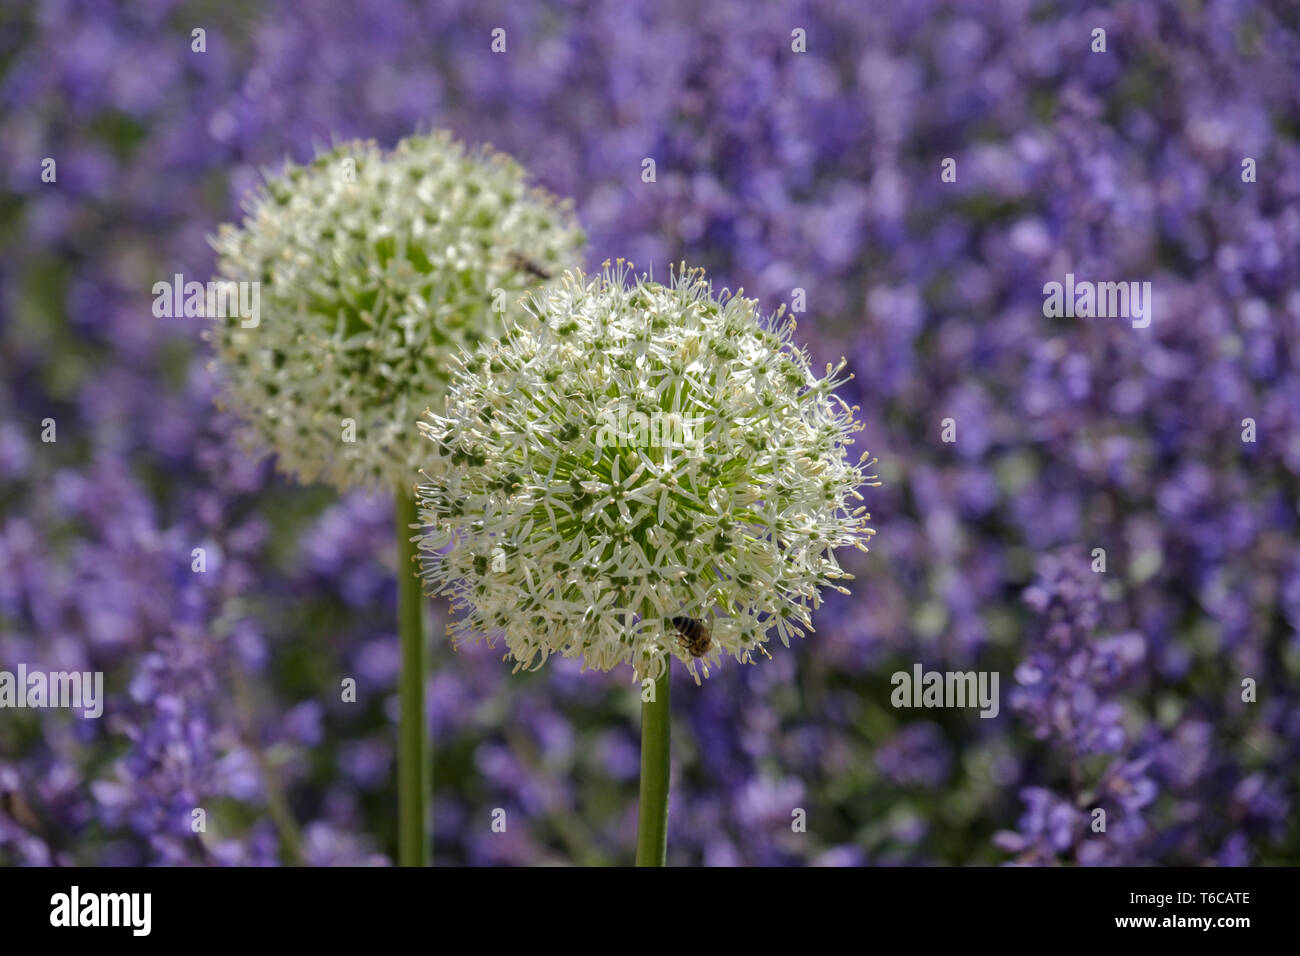 Allium Flower Stock Photo